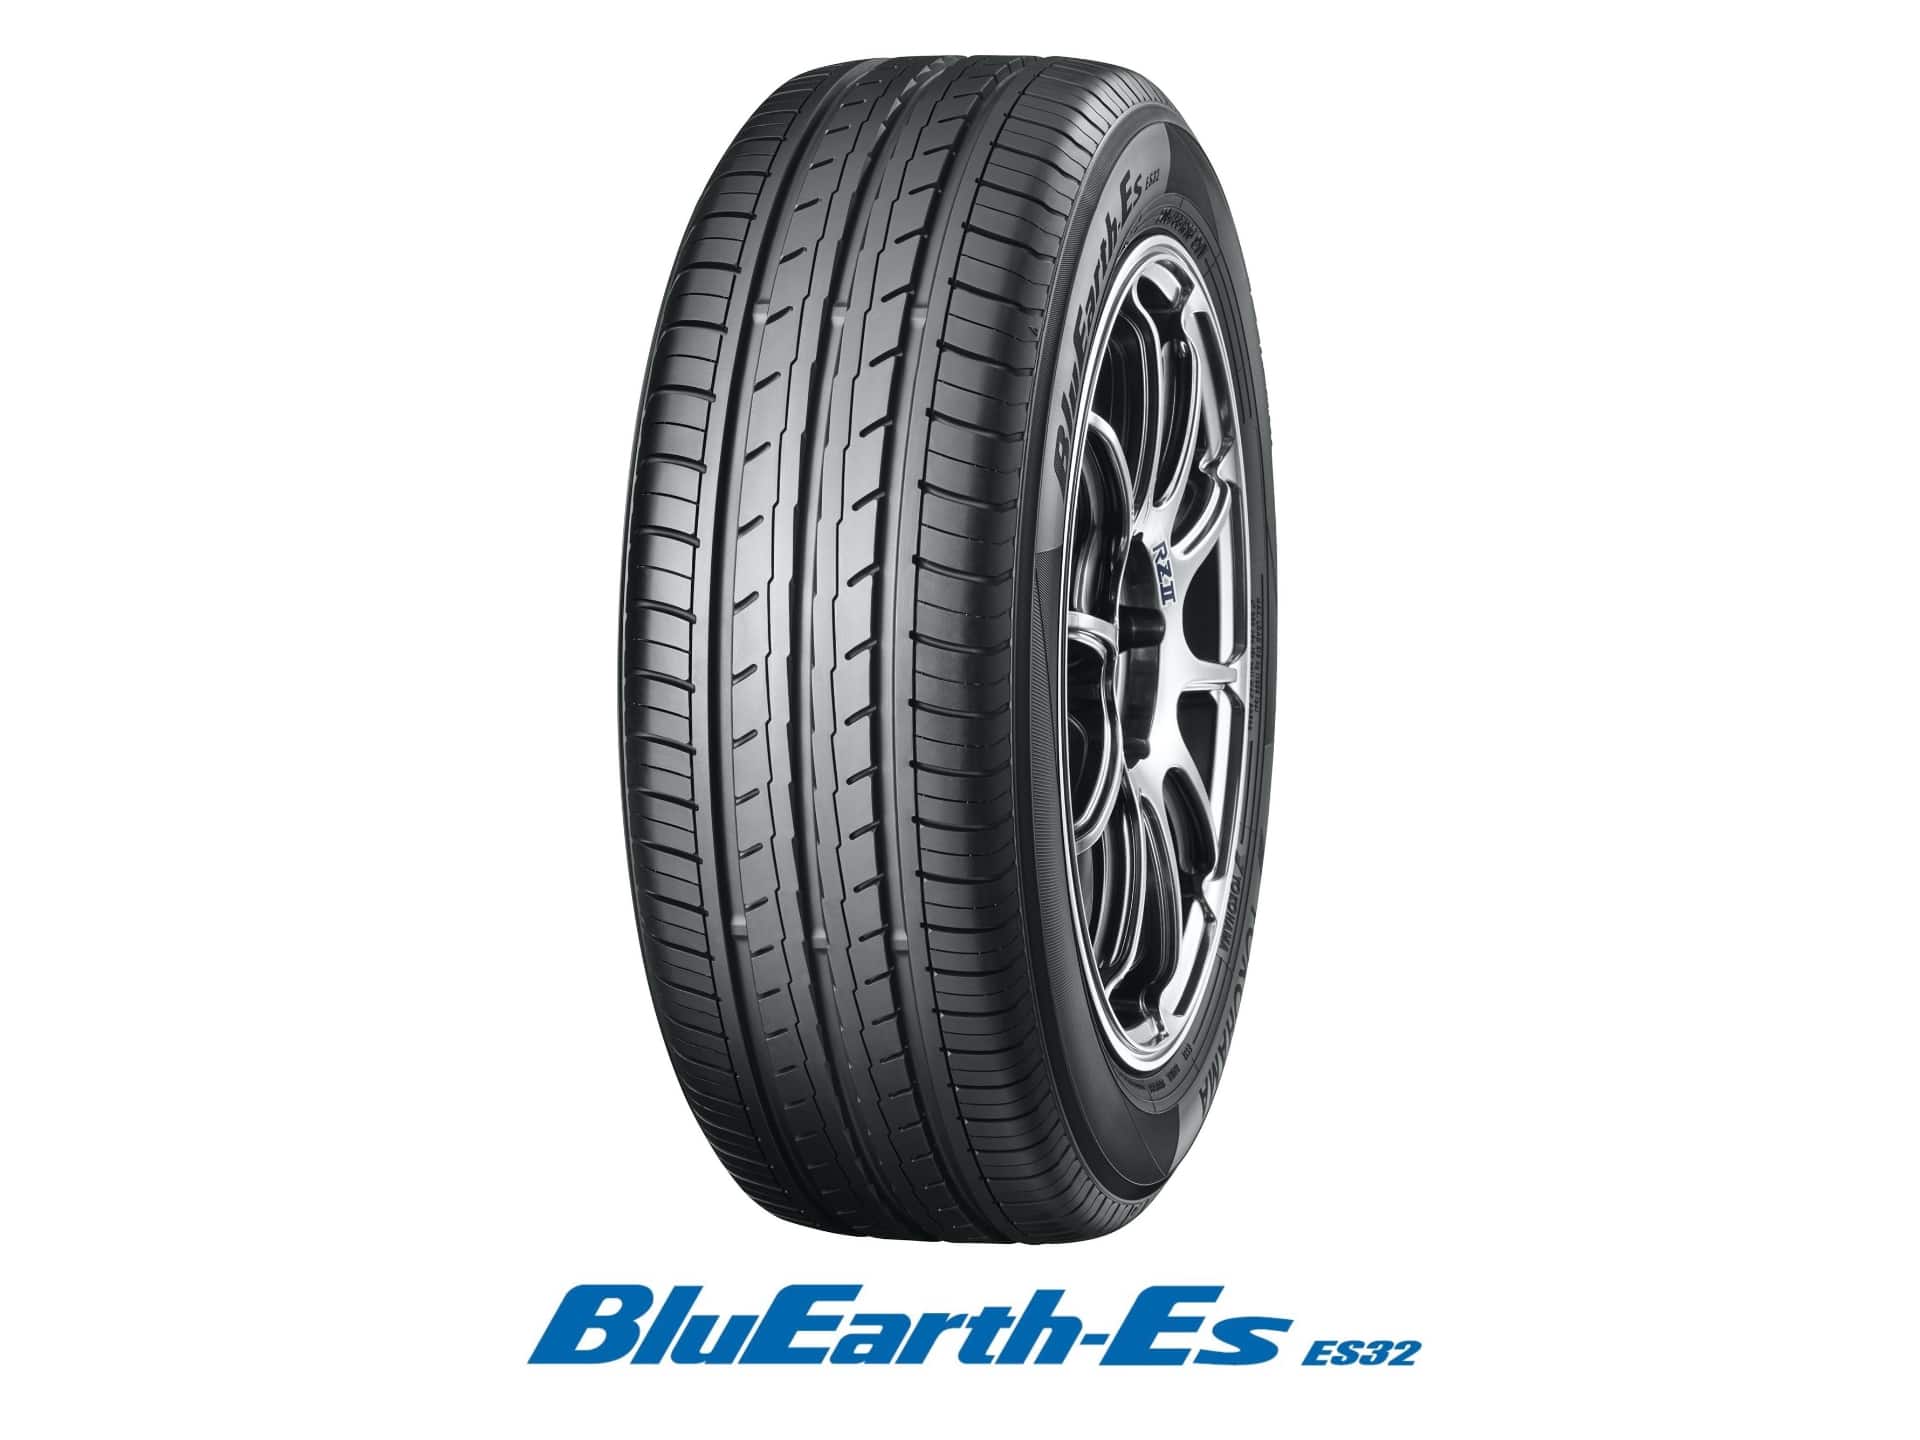 横浜ゴム「ECOS ES31」の後継タイヤ「BluEarth-Es ES32」を10月発売